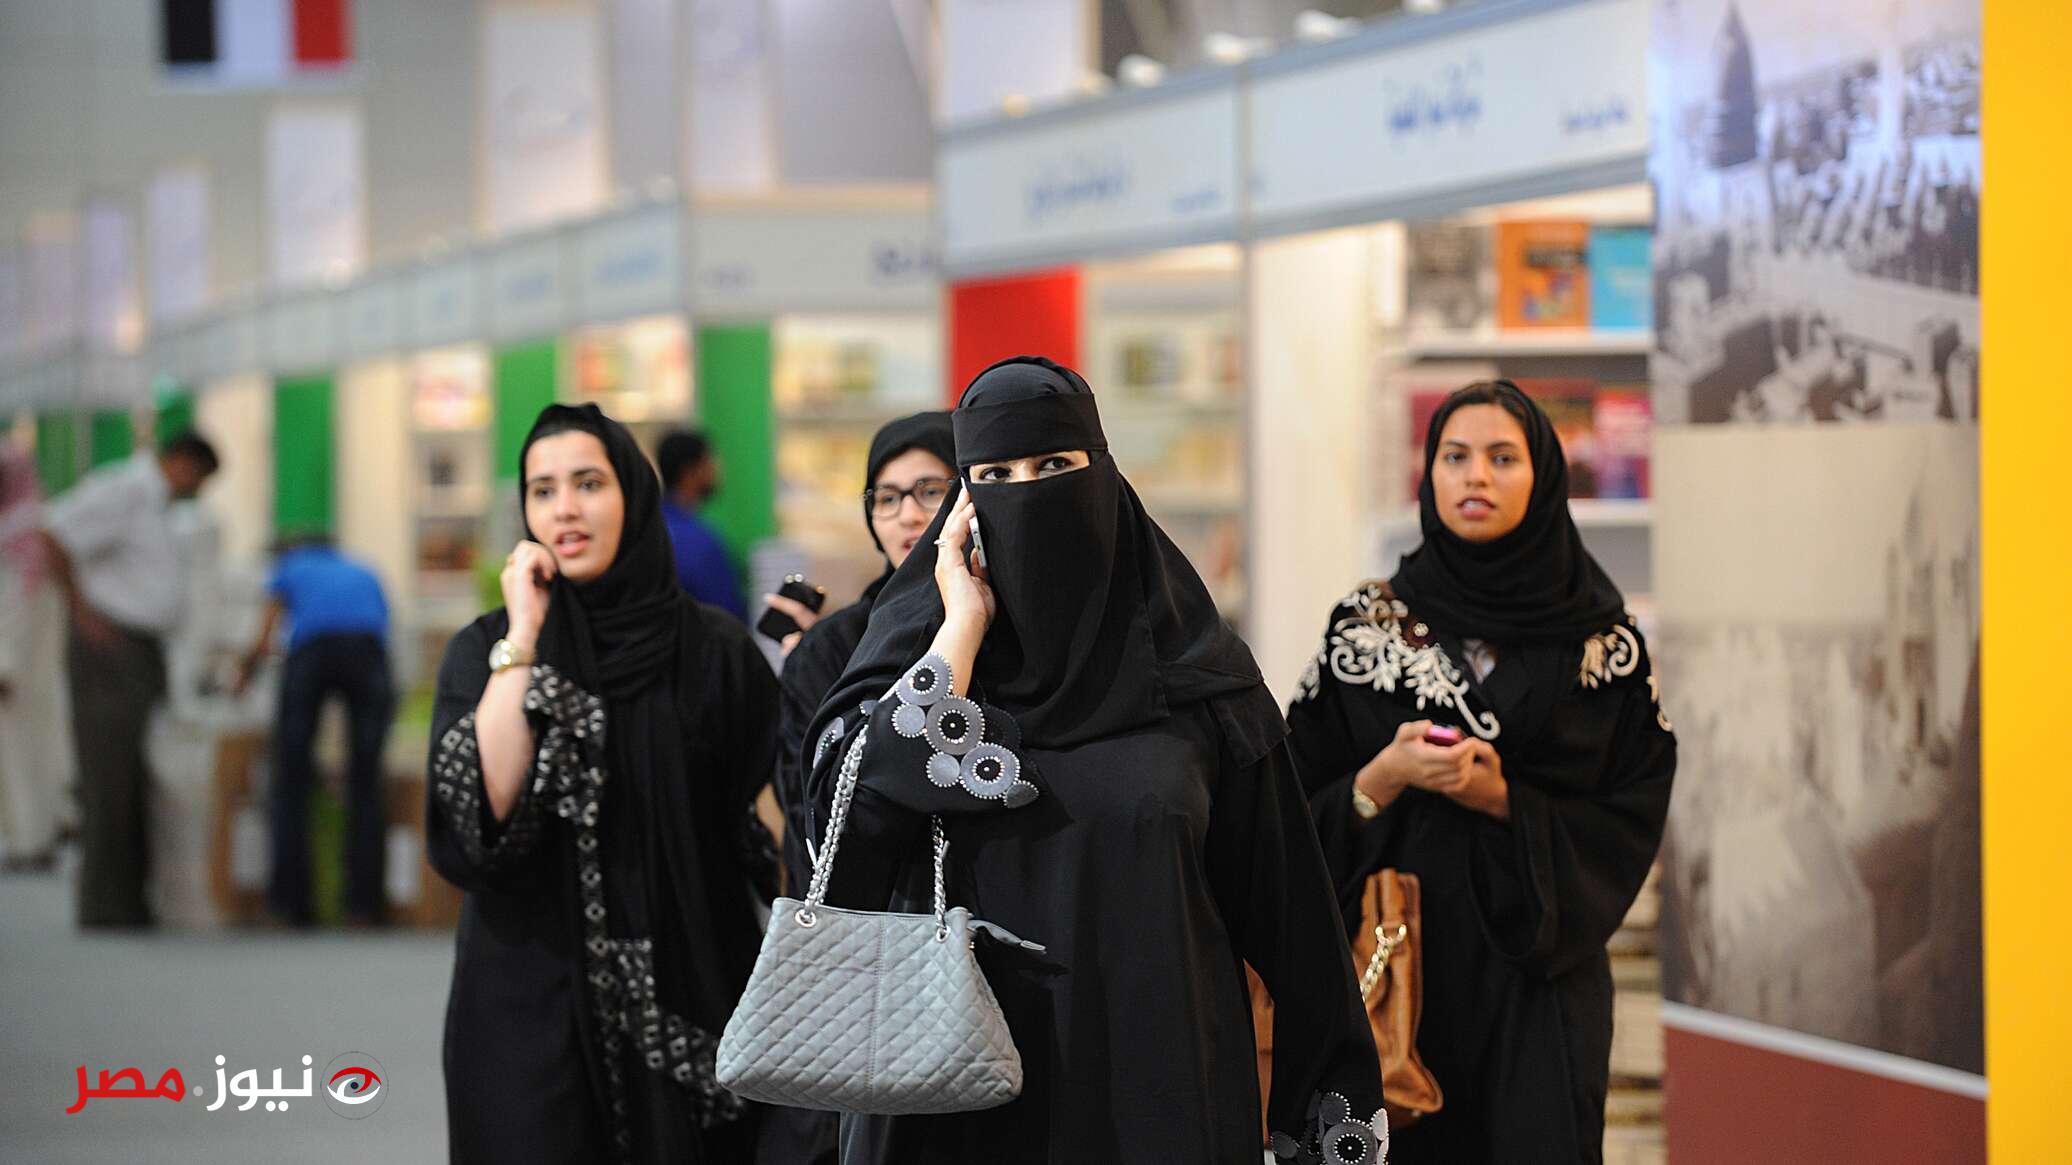 تميل الشابات في المملكة العربية السعودية إلى اختيار الرجال من هذه الأصول القومية كشركاء للحياة الزوجية